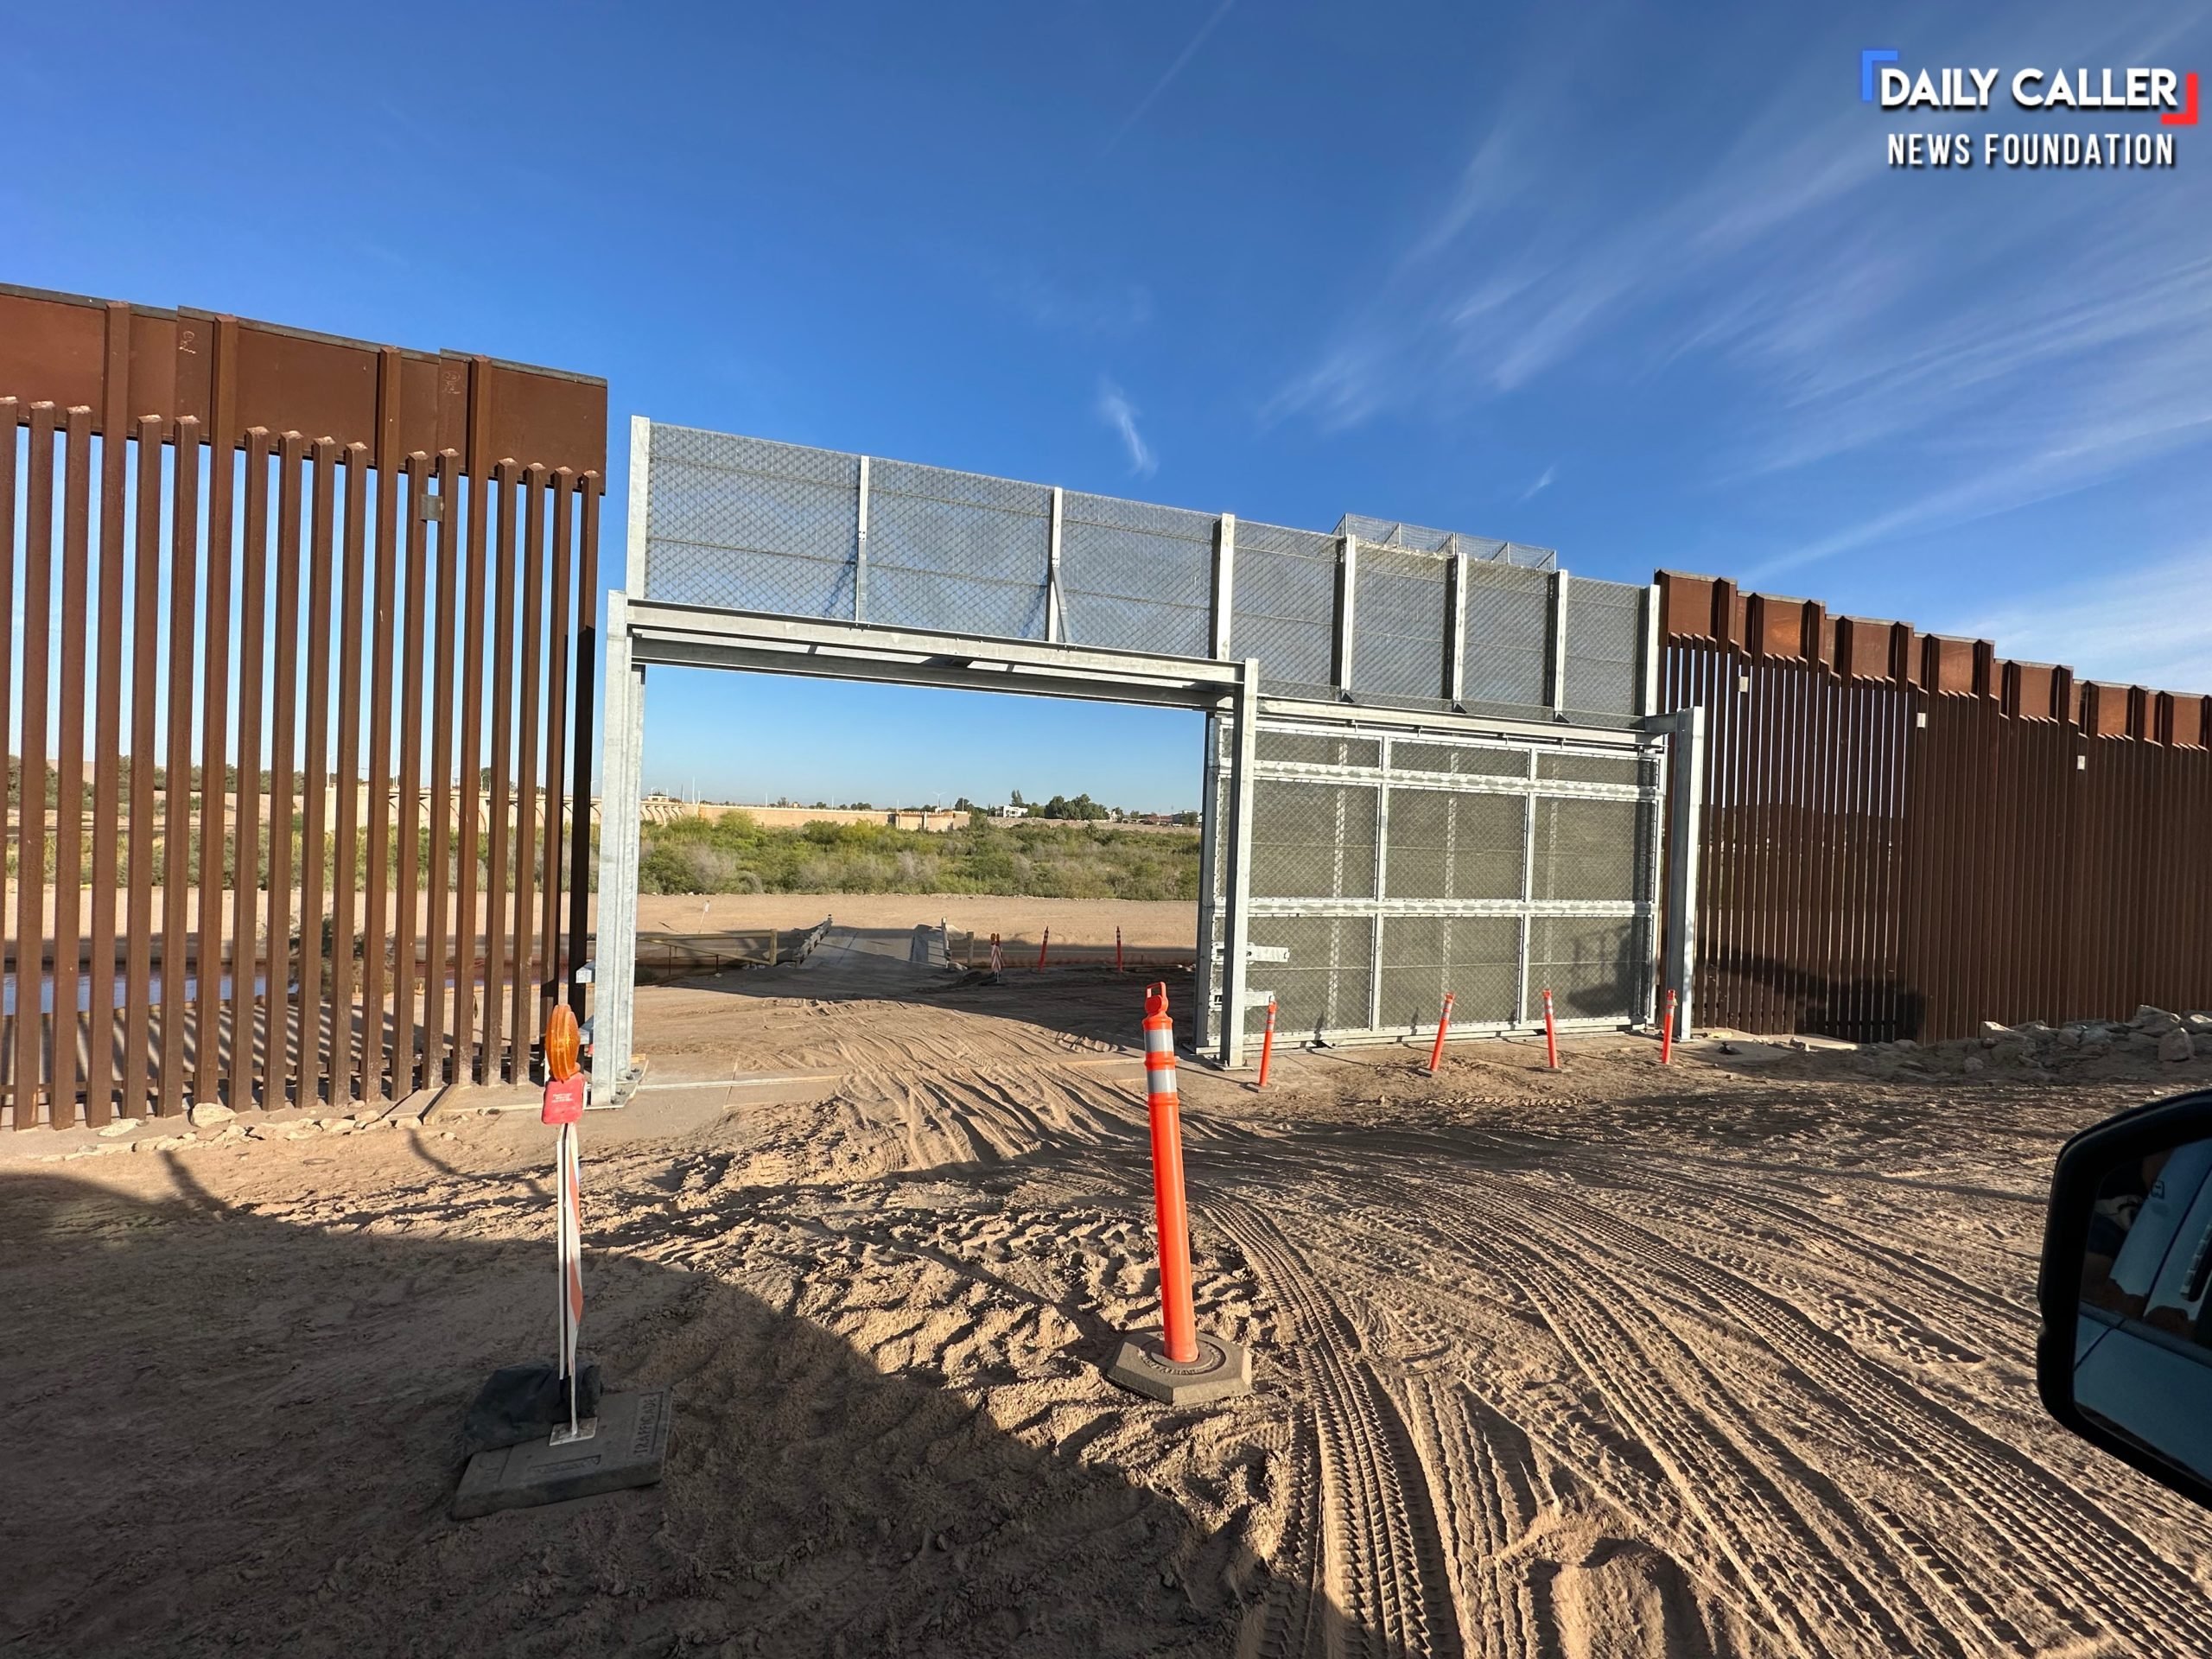 Photo of Yuma, Arizona, border wall construction courtesy of Yuma County Supervisor Jonathan Lines